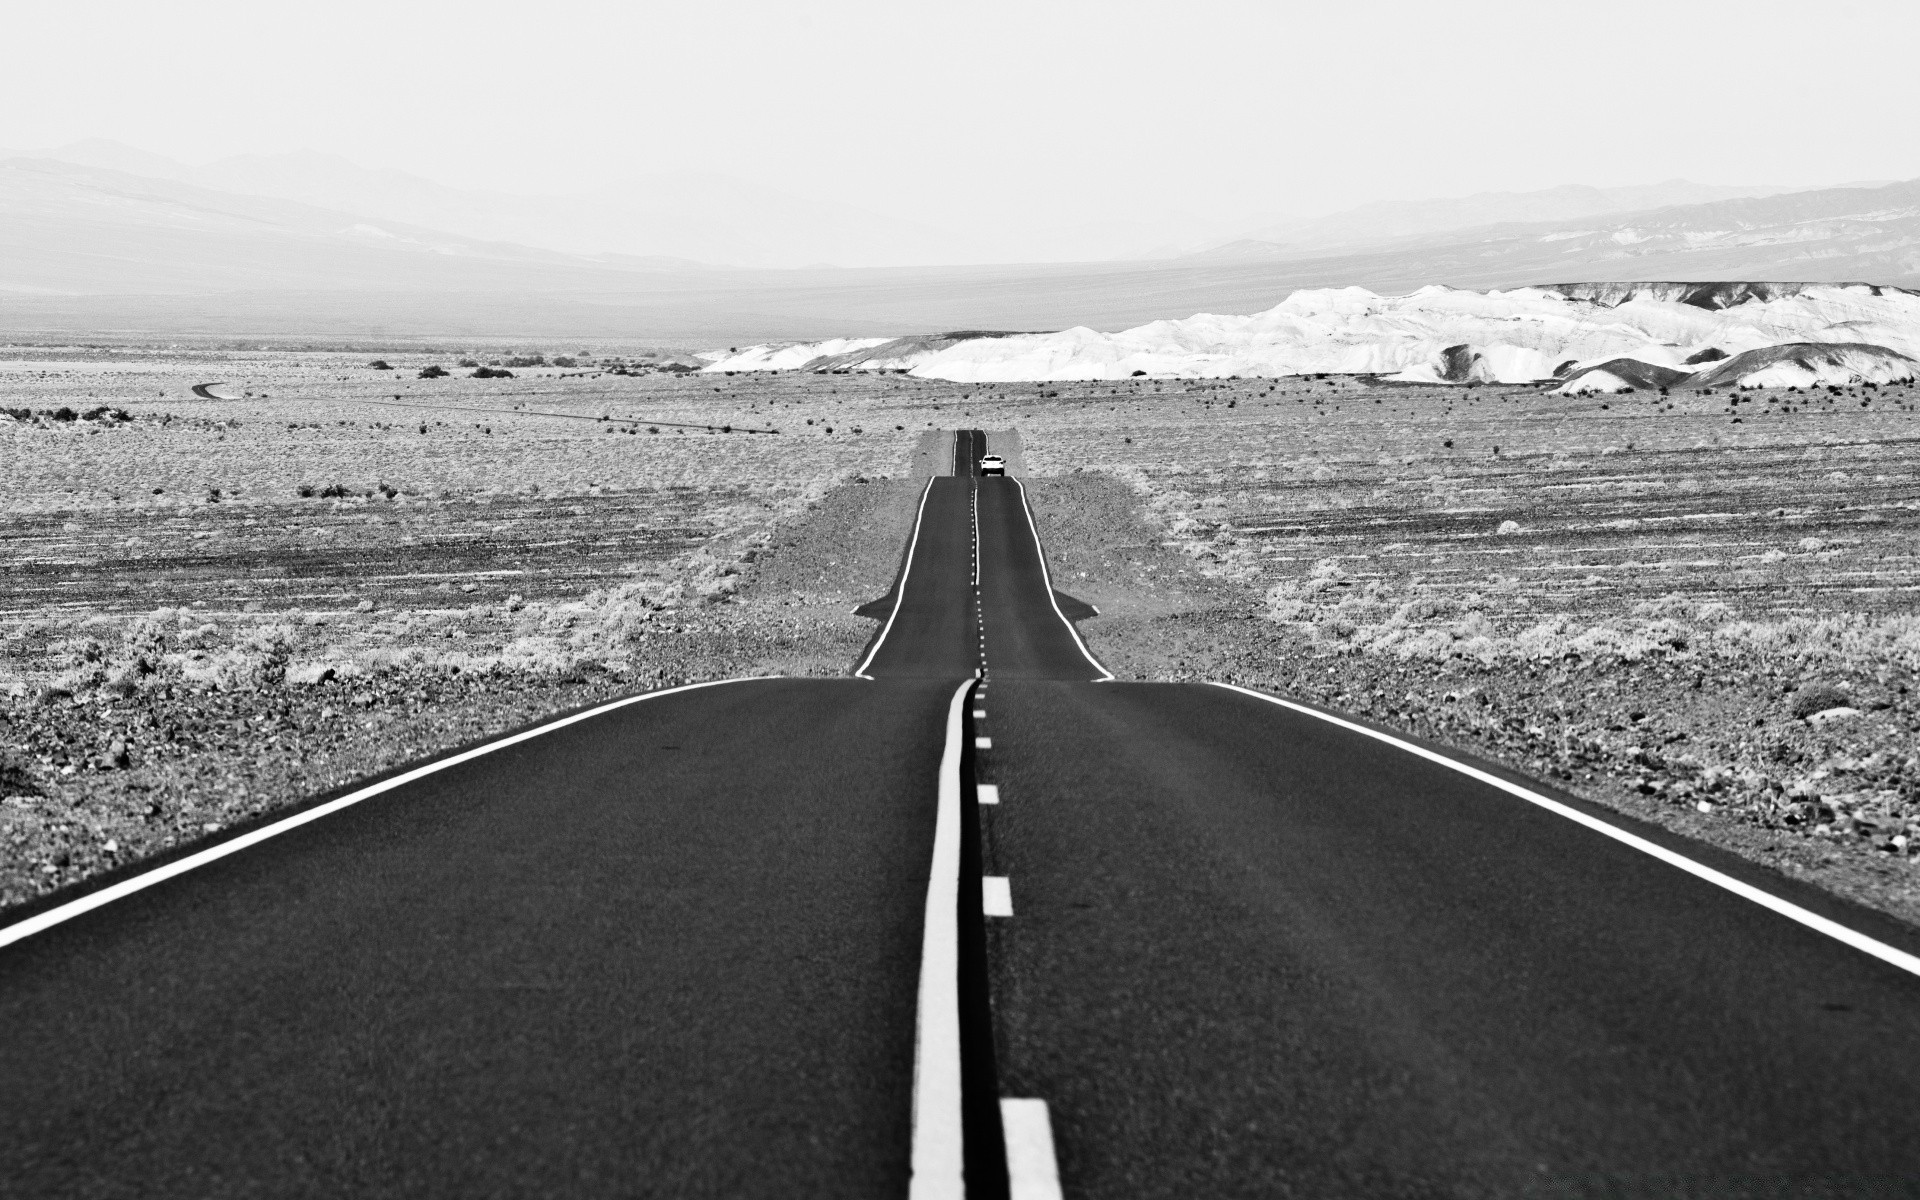 черно-белое шоссе дорога асфальт пейзаж путешествия транспортная система улица пустые пустыня небо монохромный руководство хорды на открытом воздухе